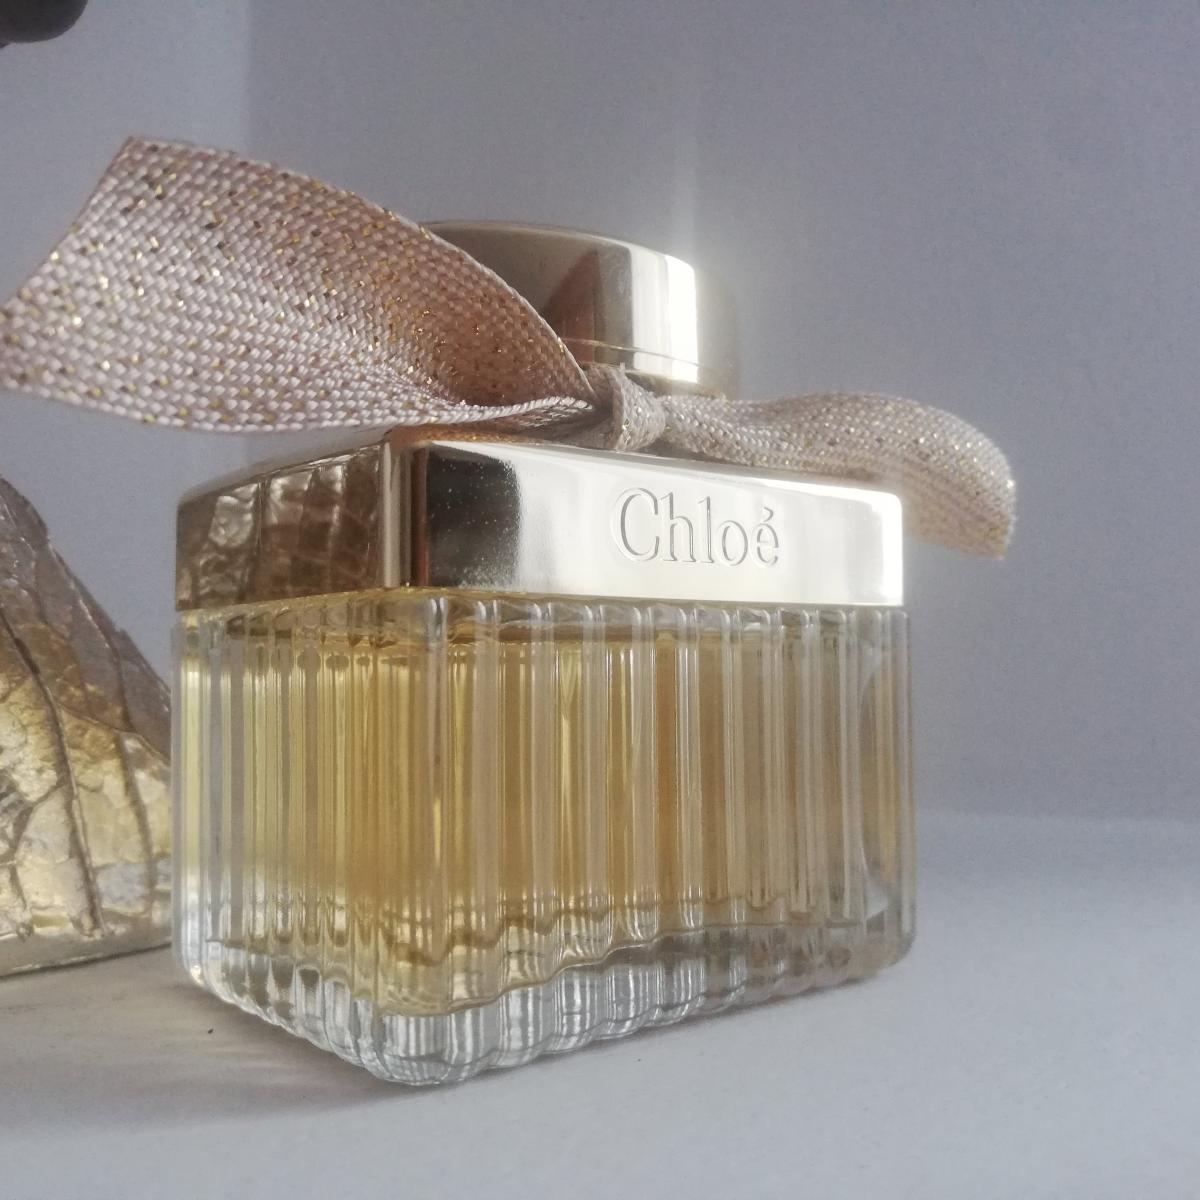 Chloé Absolu de Parfum Chloé perfume - a fragrance for women 2017